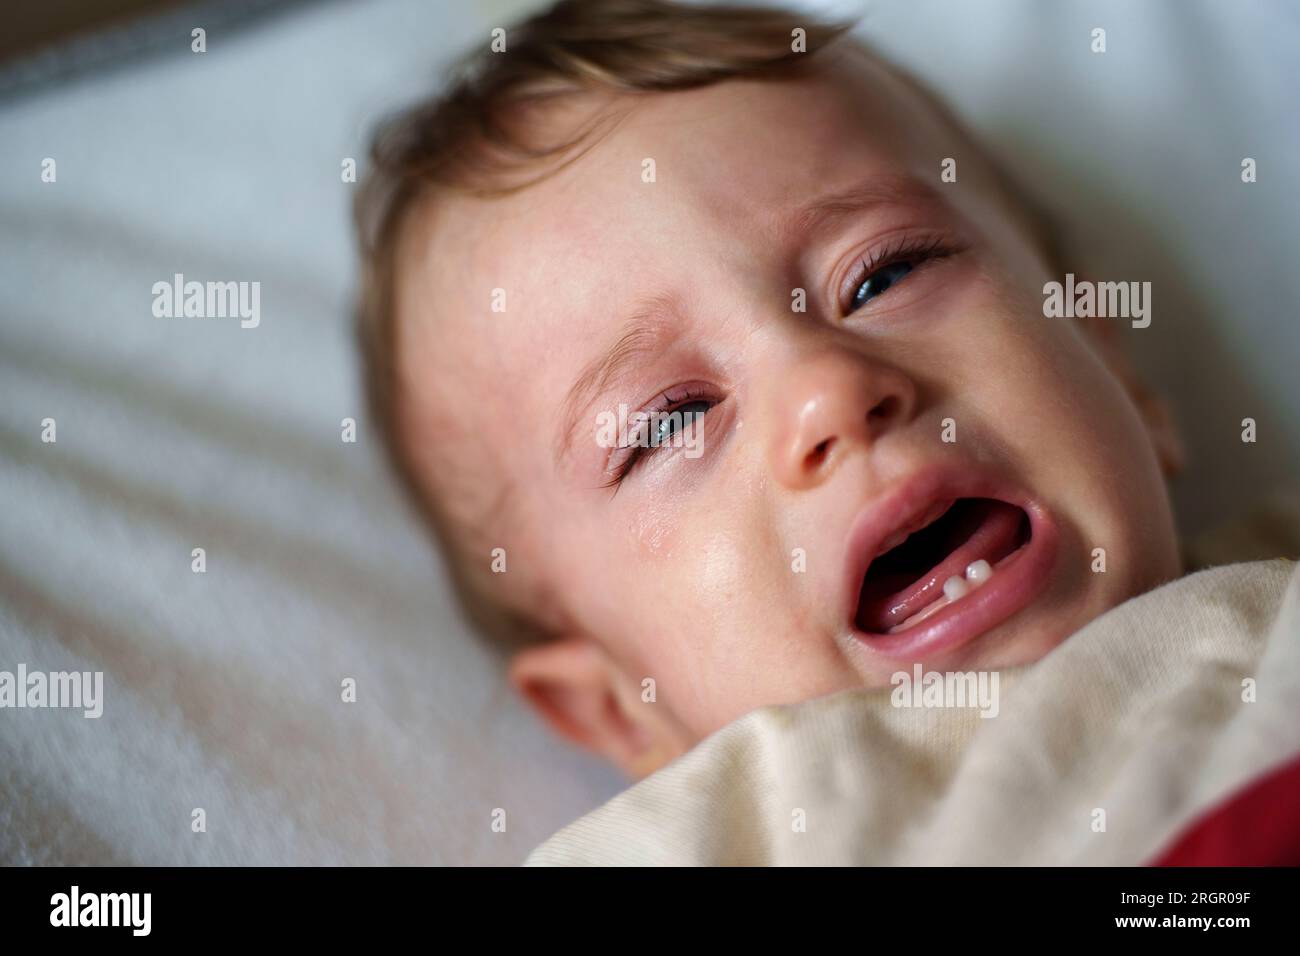 Bébé agité qui pleure Banque D'Images